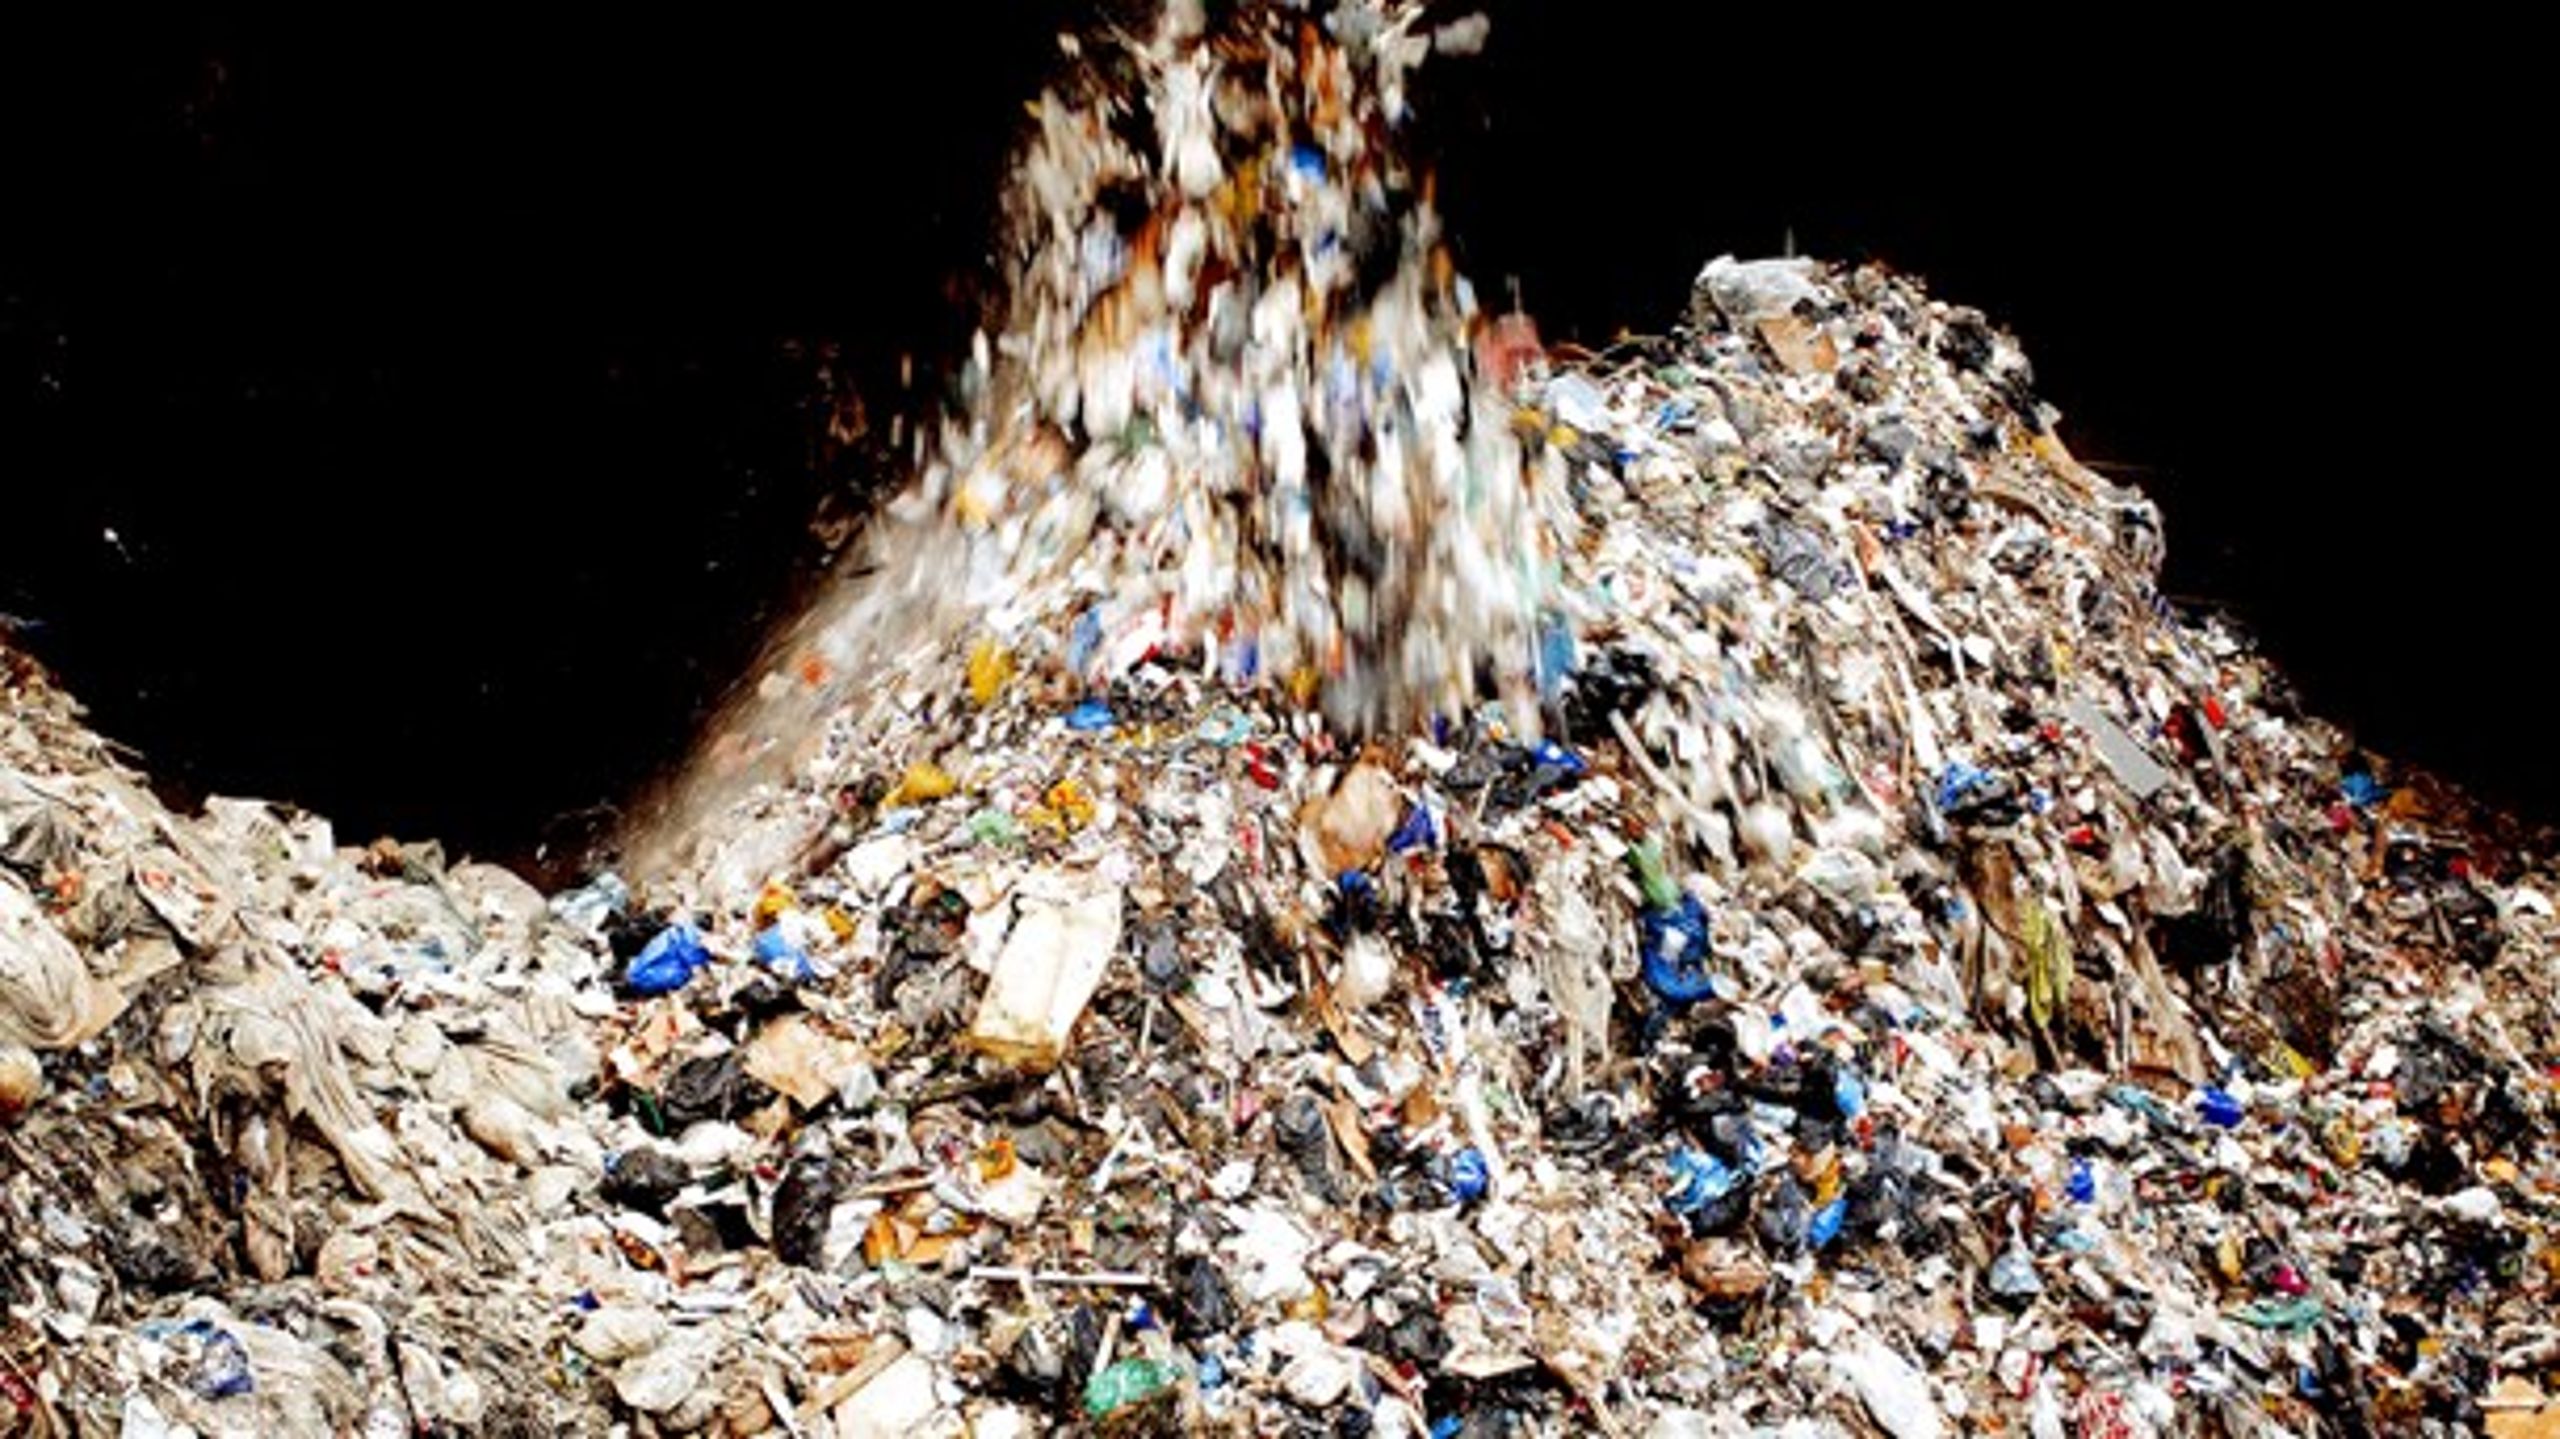 Plastafgiften bør helt droppes på de genanvendelige materialer, skriver Dansk Erhverv og Ragn-Sells.